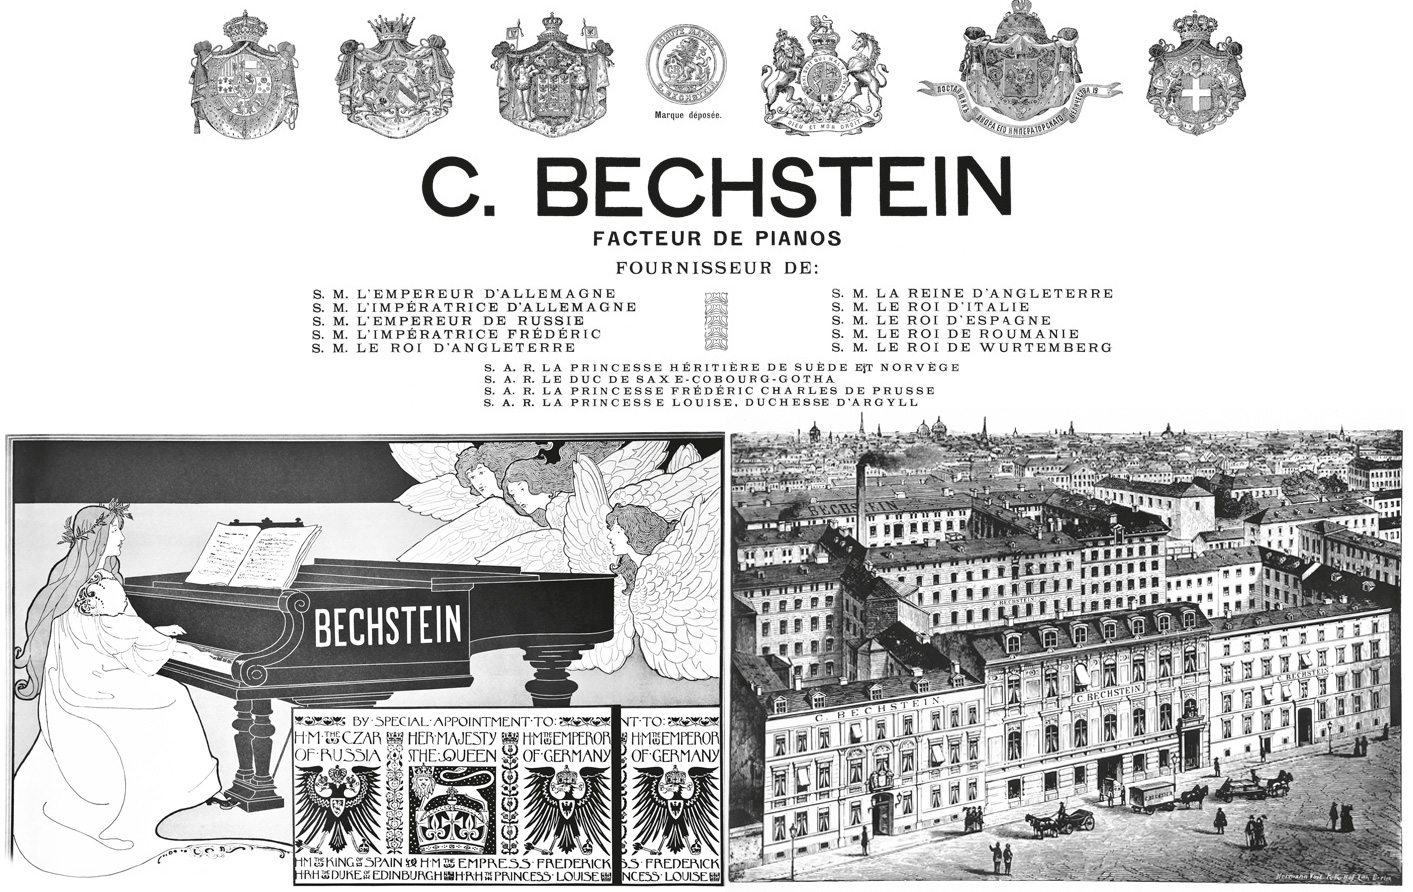 Dan-piano-grand-bechstein-concert-c282